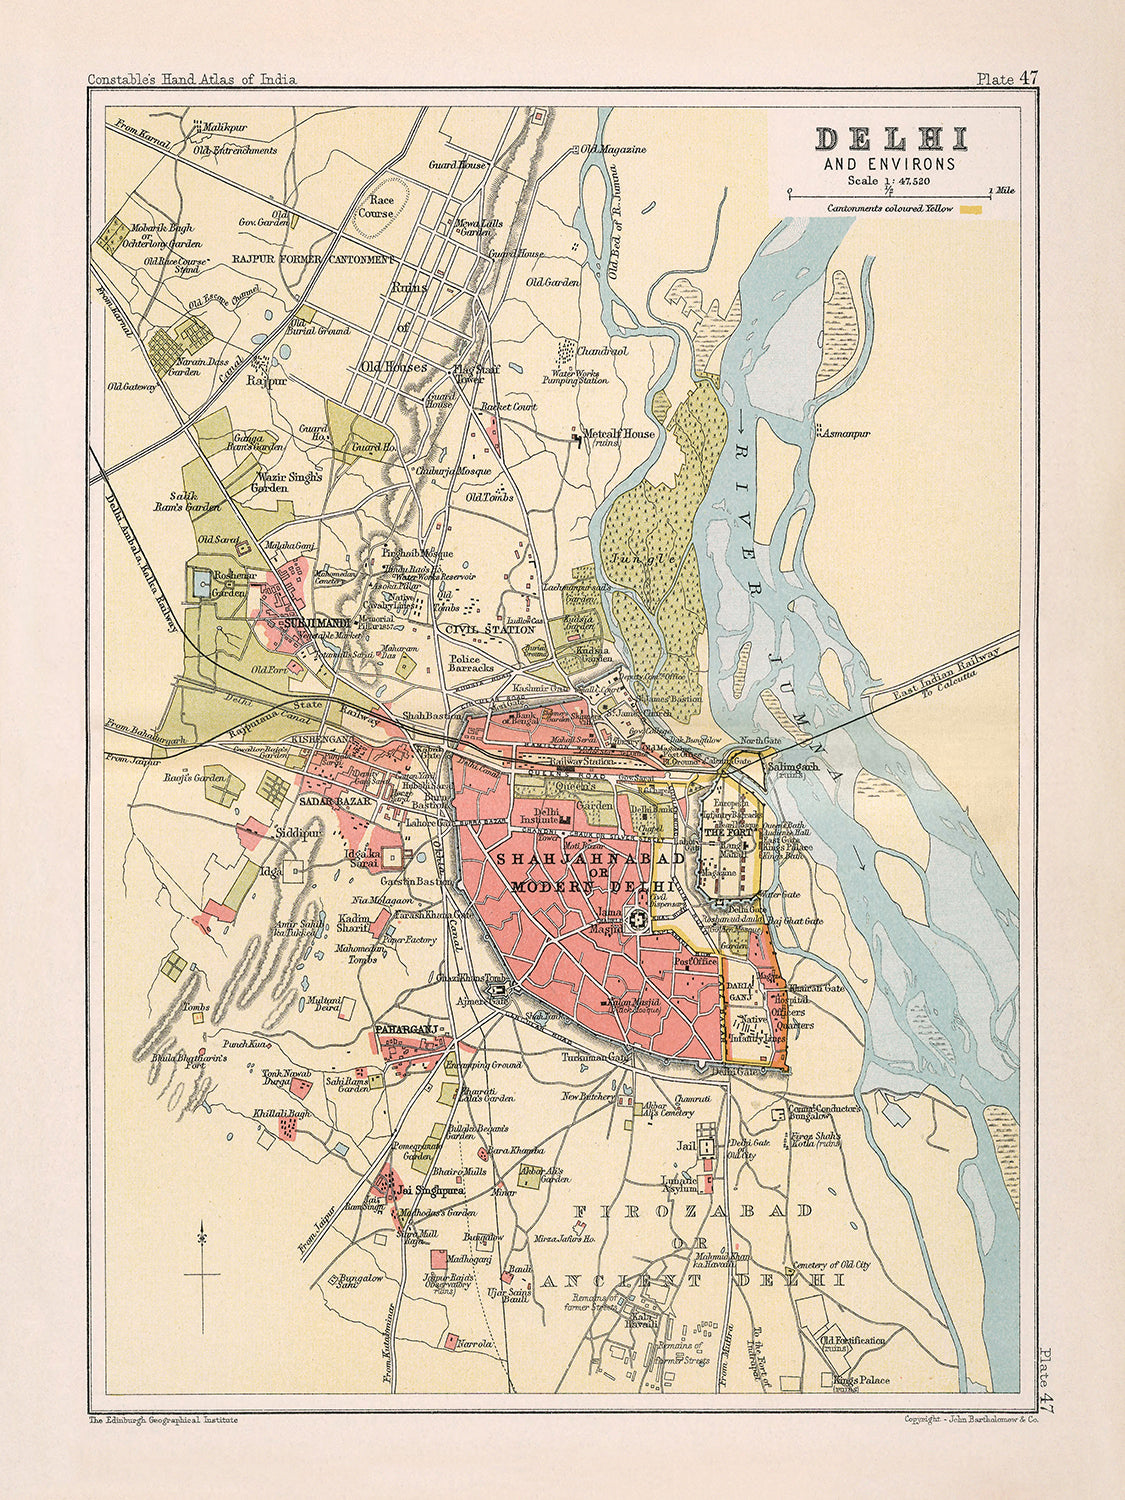 Ancienne carte de Delhi par Bartholomew, 1893 : Shahjahanabad, Jumma Musjid, rivière Yamuna, porte de Delhi, porte du Cachemire